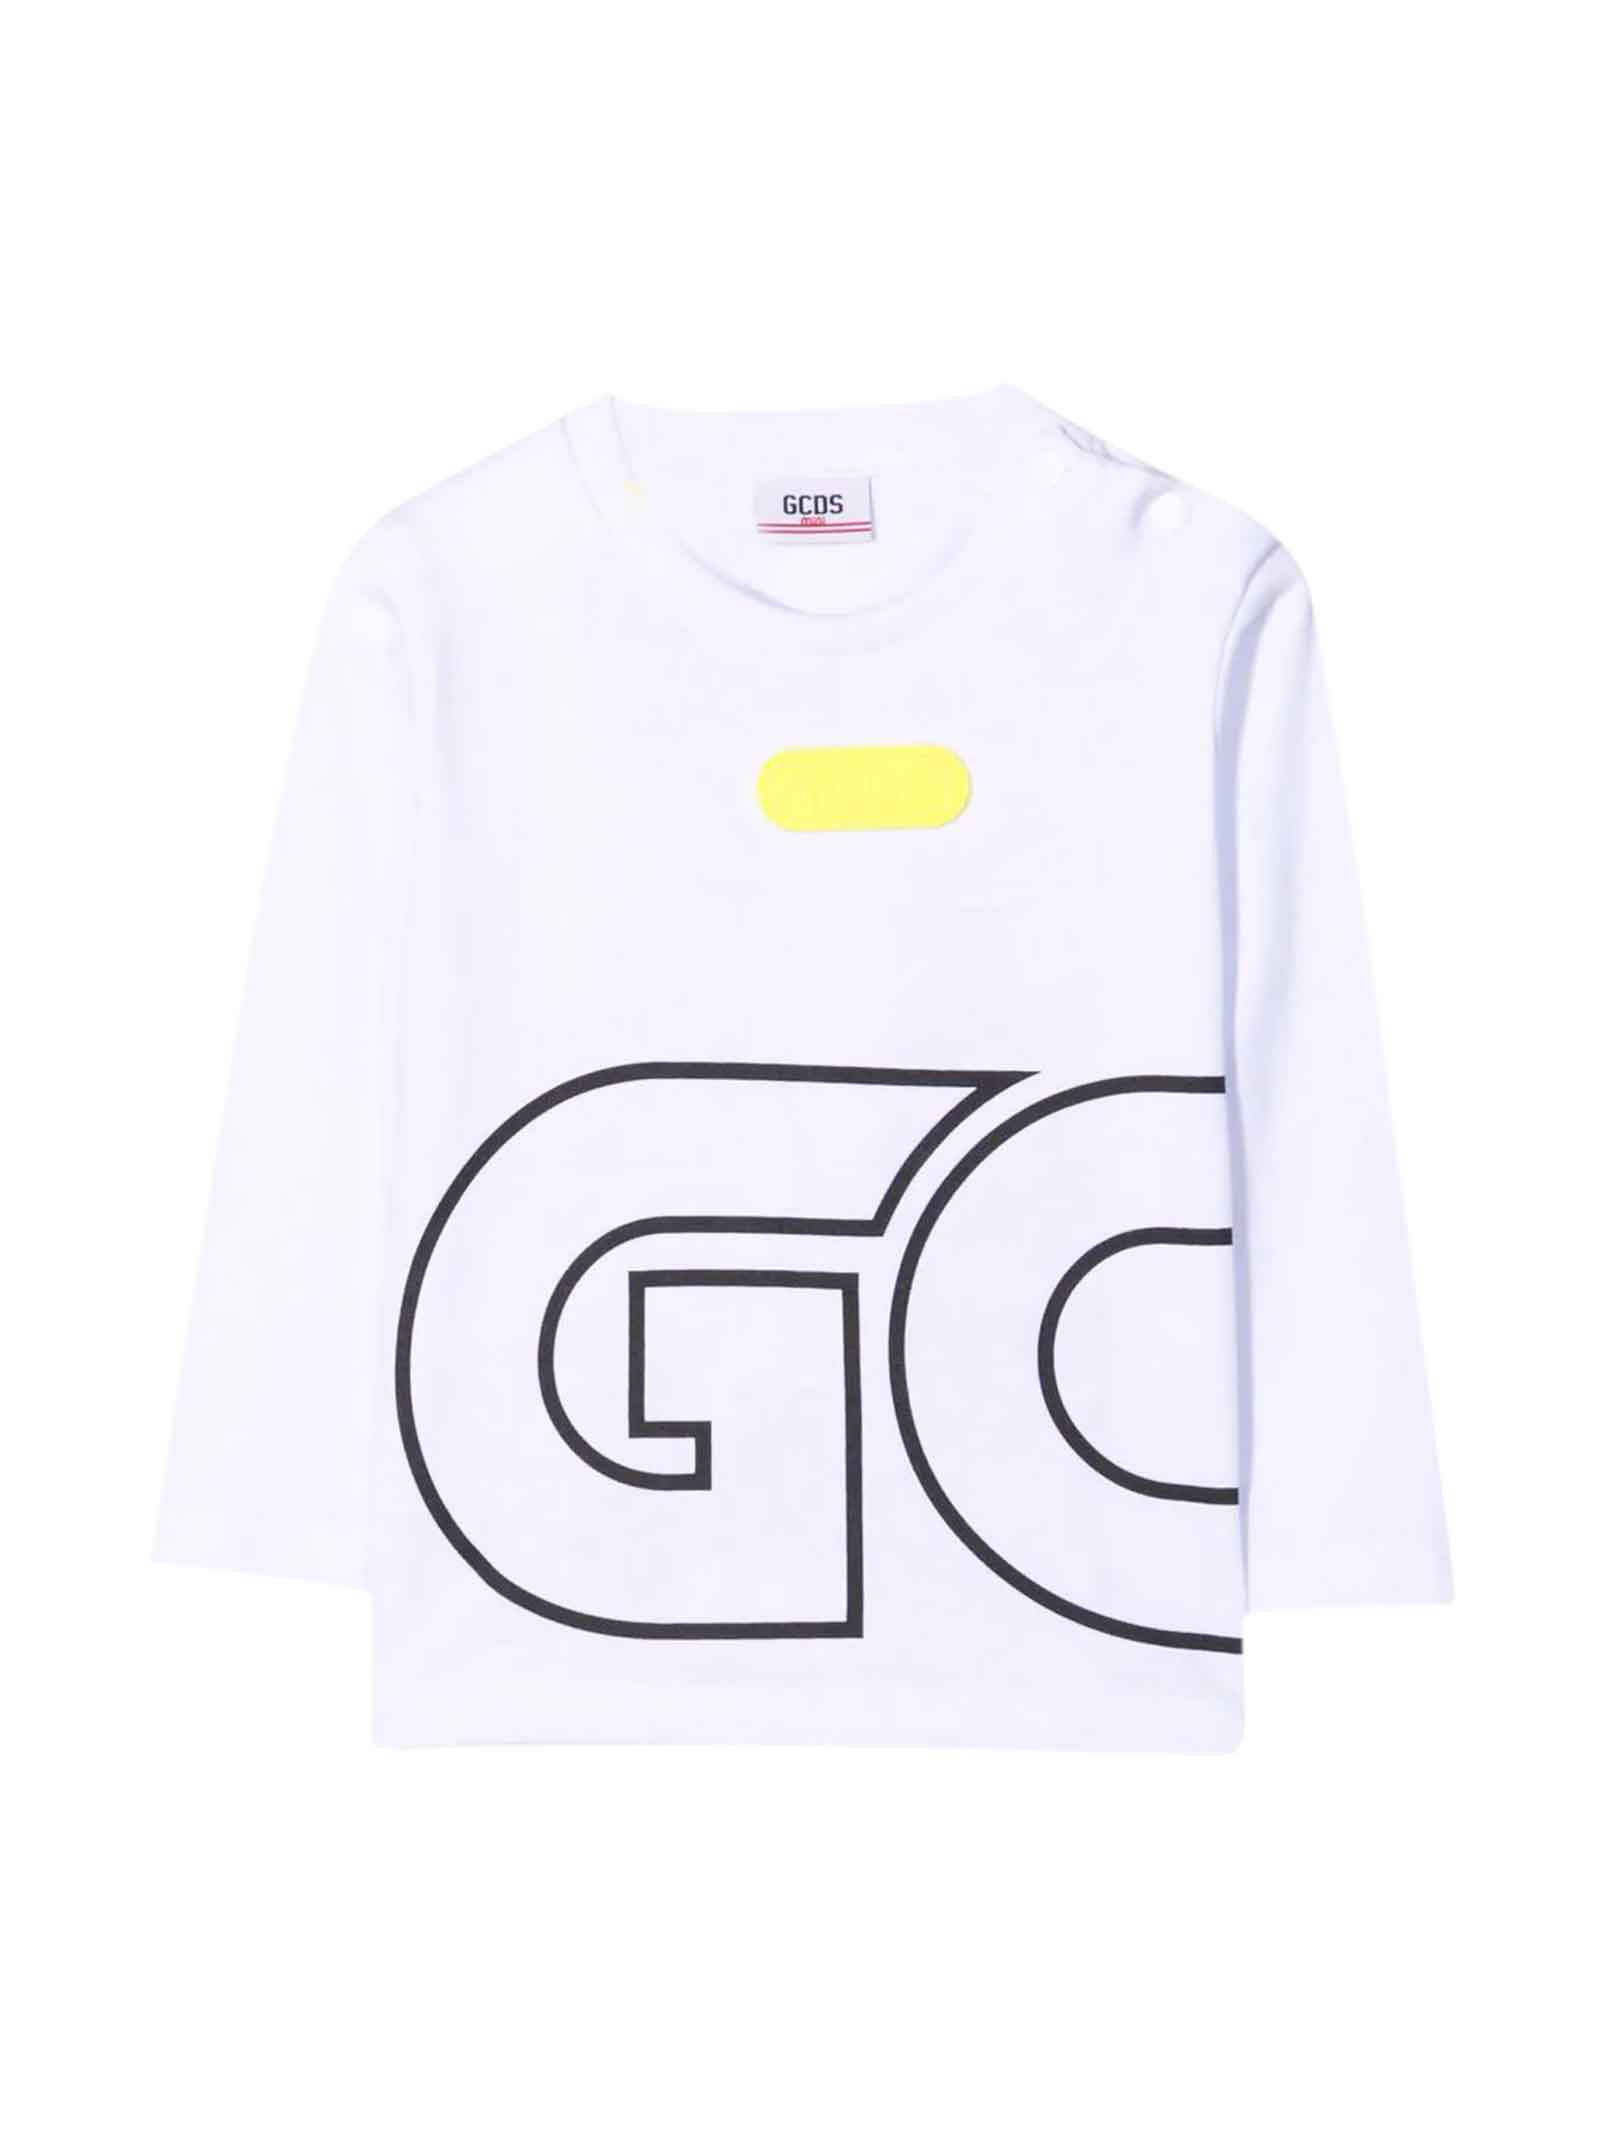 GCDS Mini Unisex White T-shirt